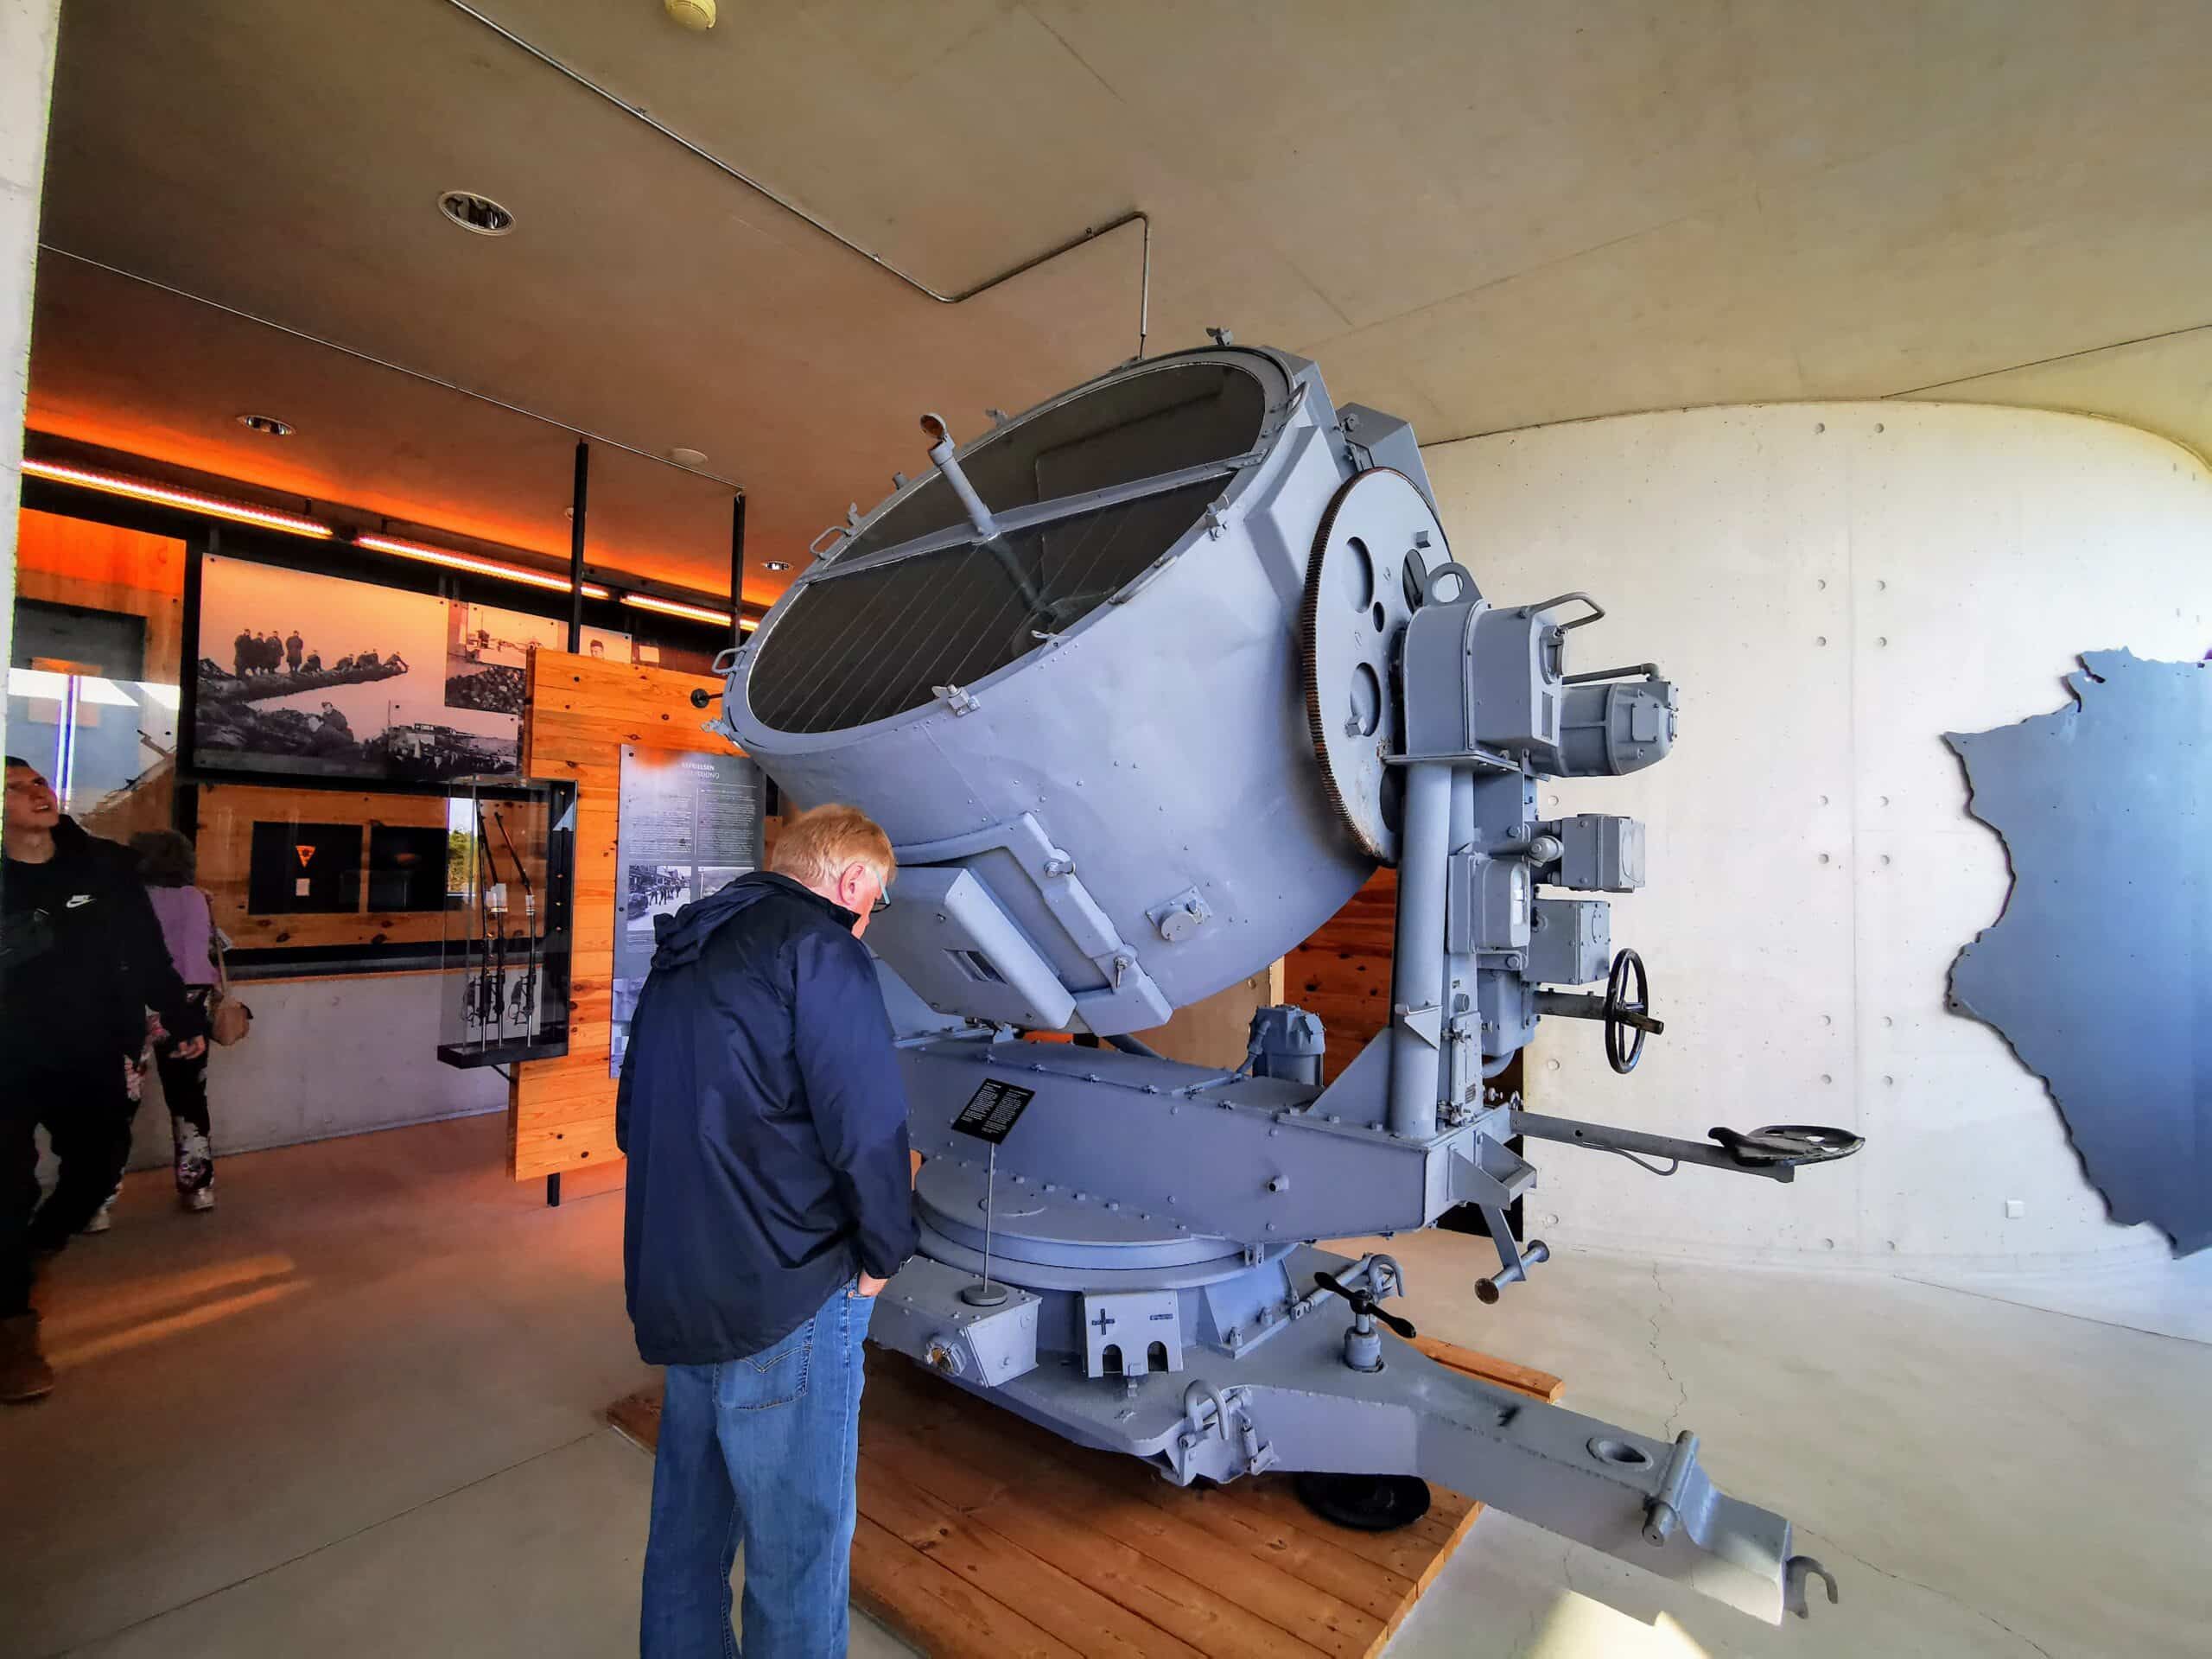 Eine Gruppe von Menschen betrachtet eine große Maschine in einem Museum.